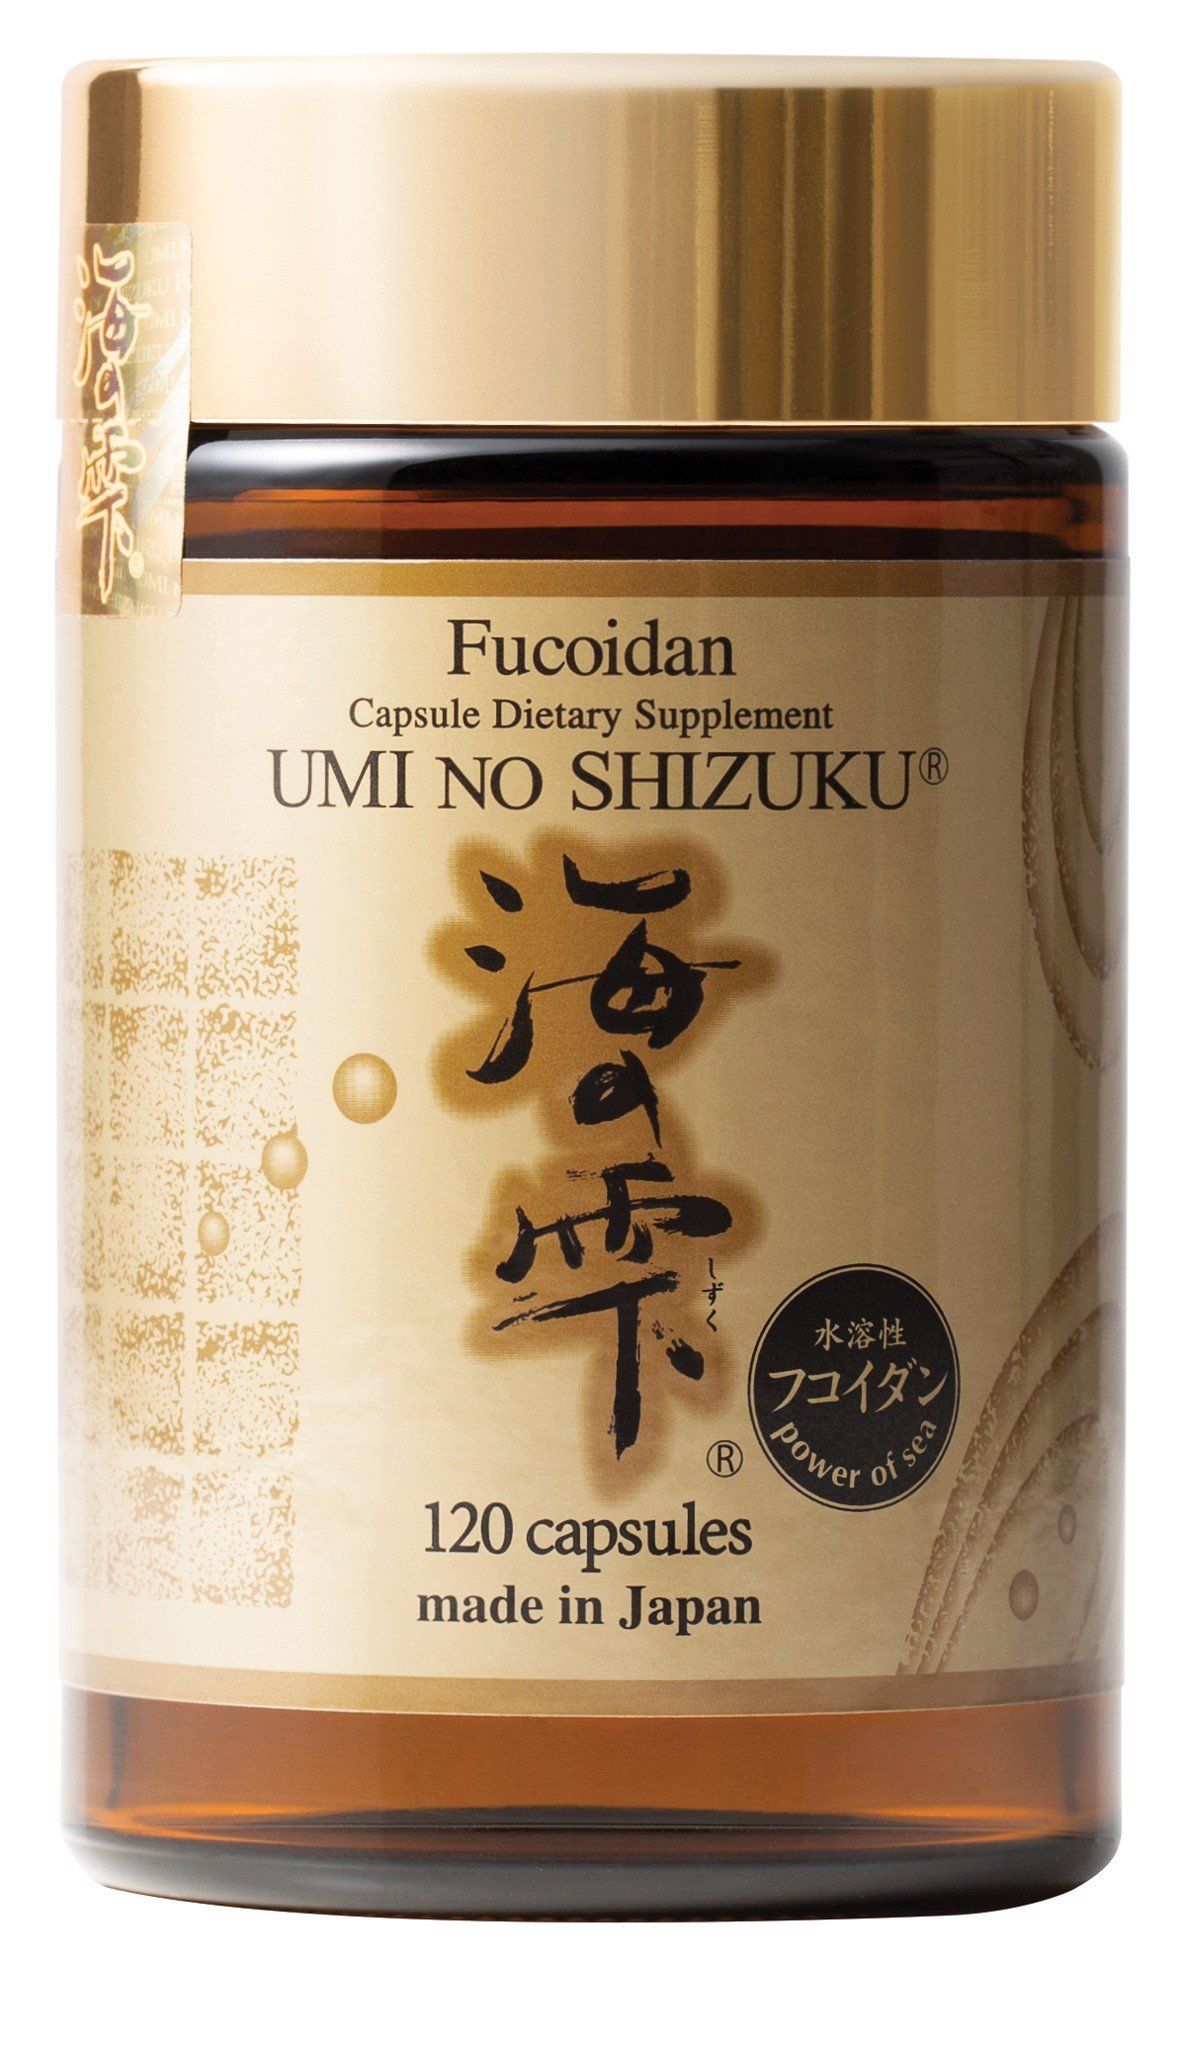  Thực Phẩm Bảo Vệ Sức Khỏe: Fucoidan Capsule Dietary Supplement UMI NO SHIZUKU 